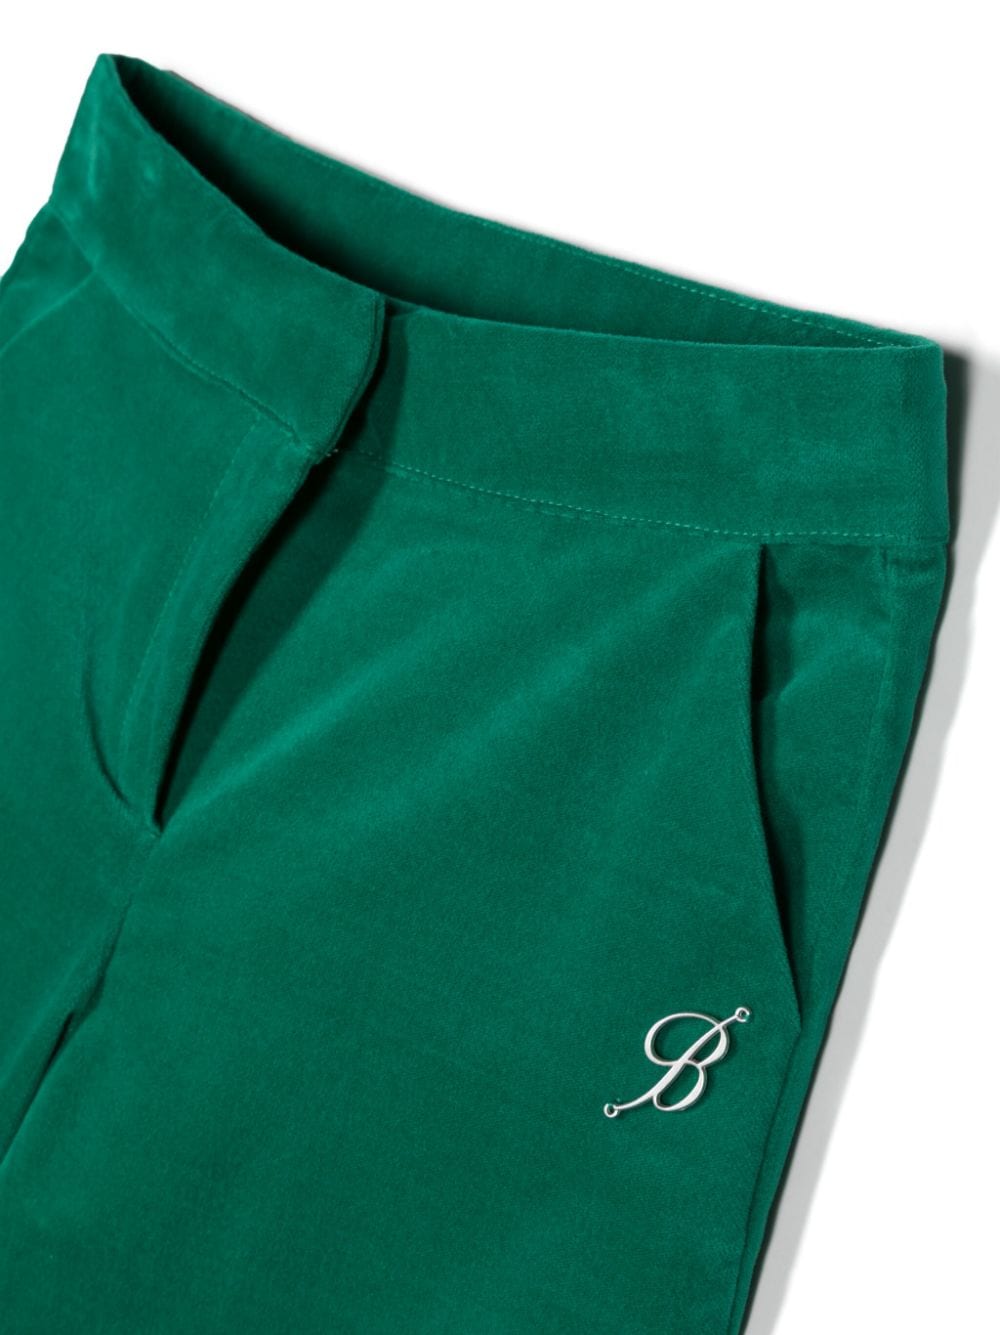 Pantaloni verdi smeraldo bambina con logo